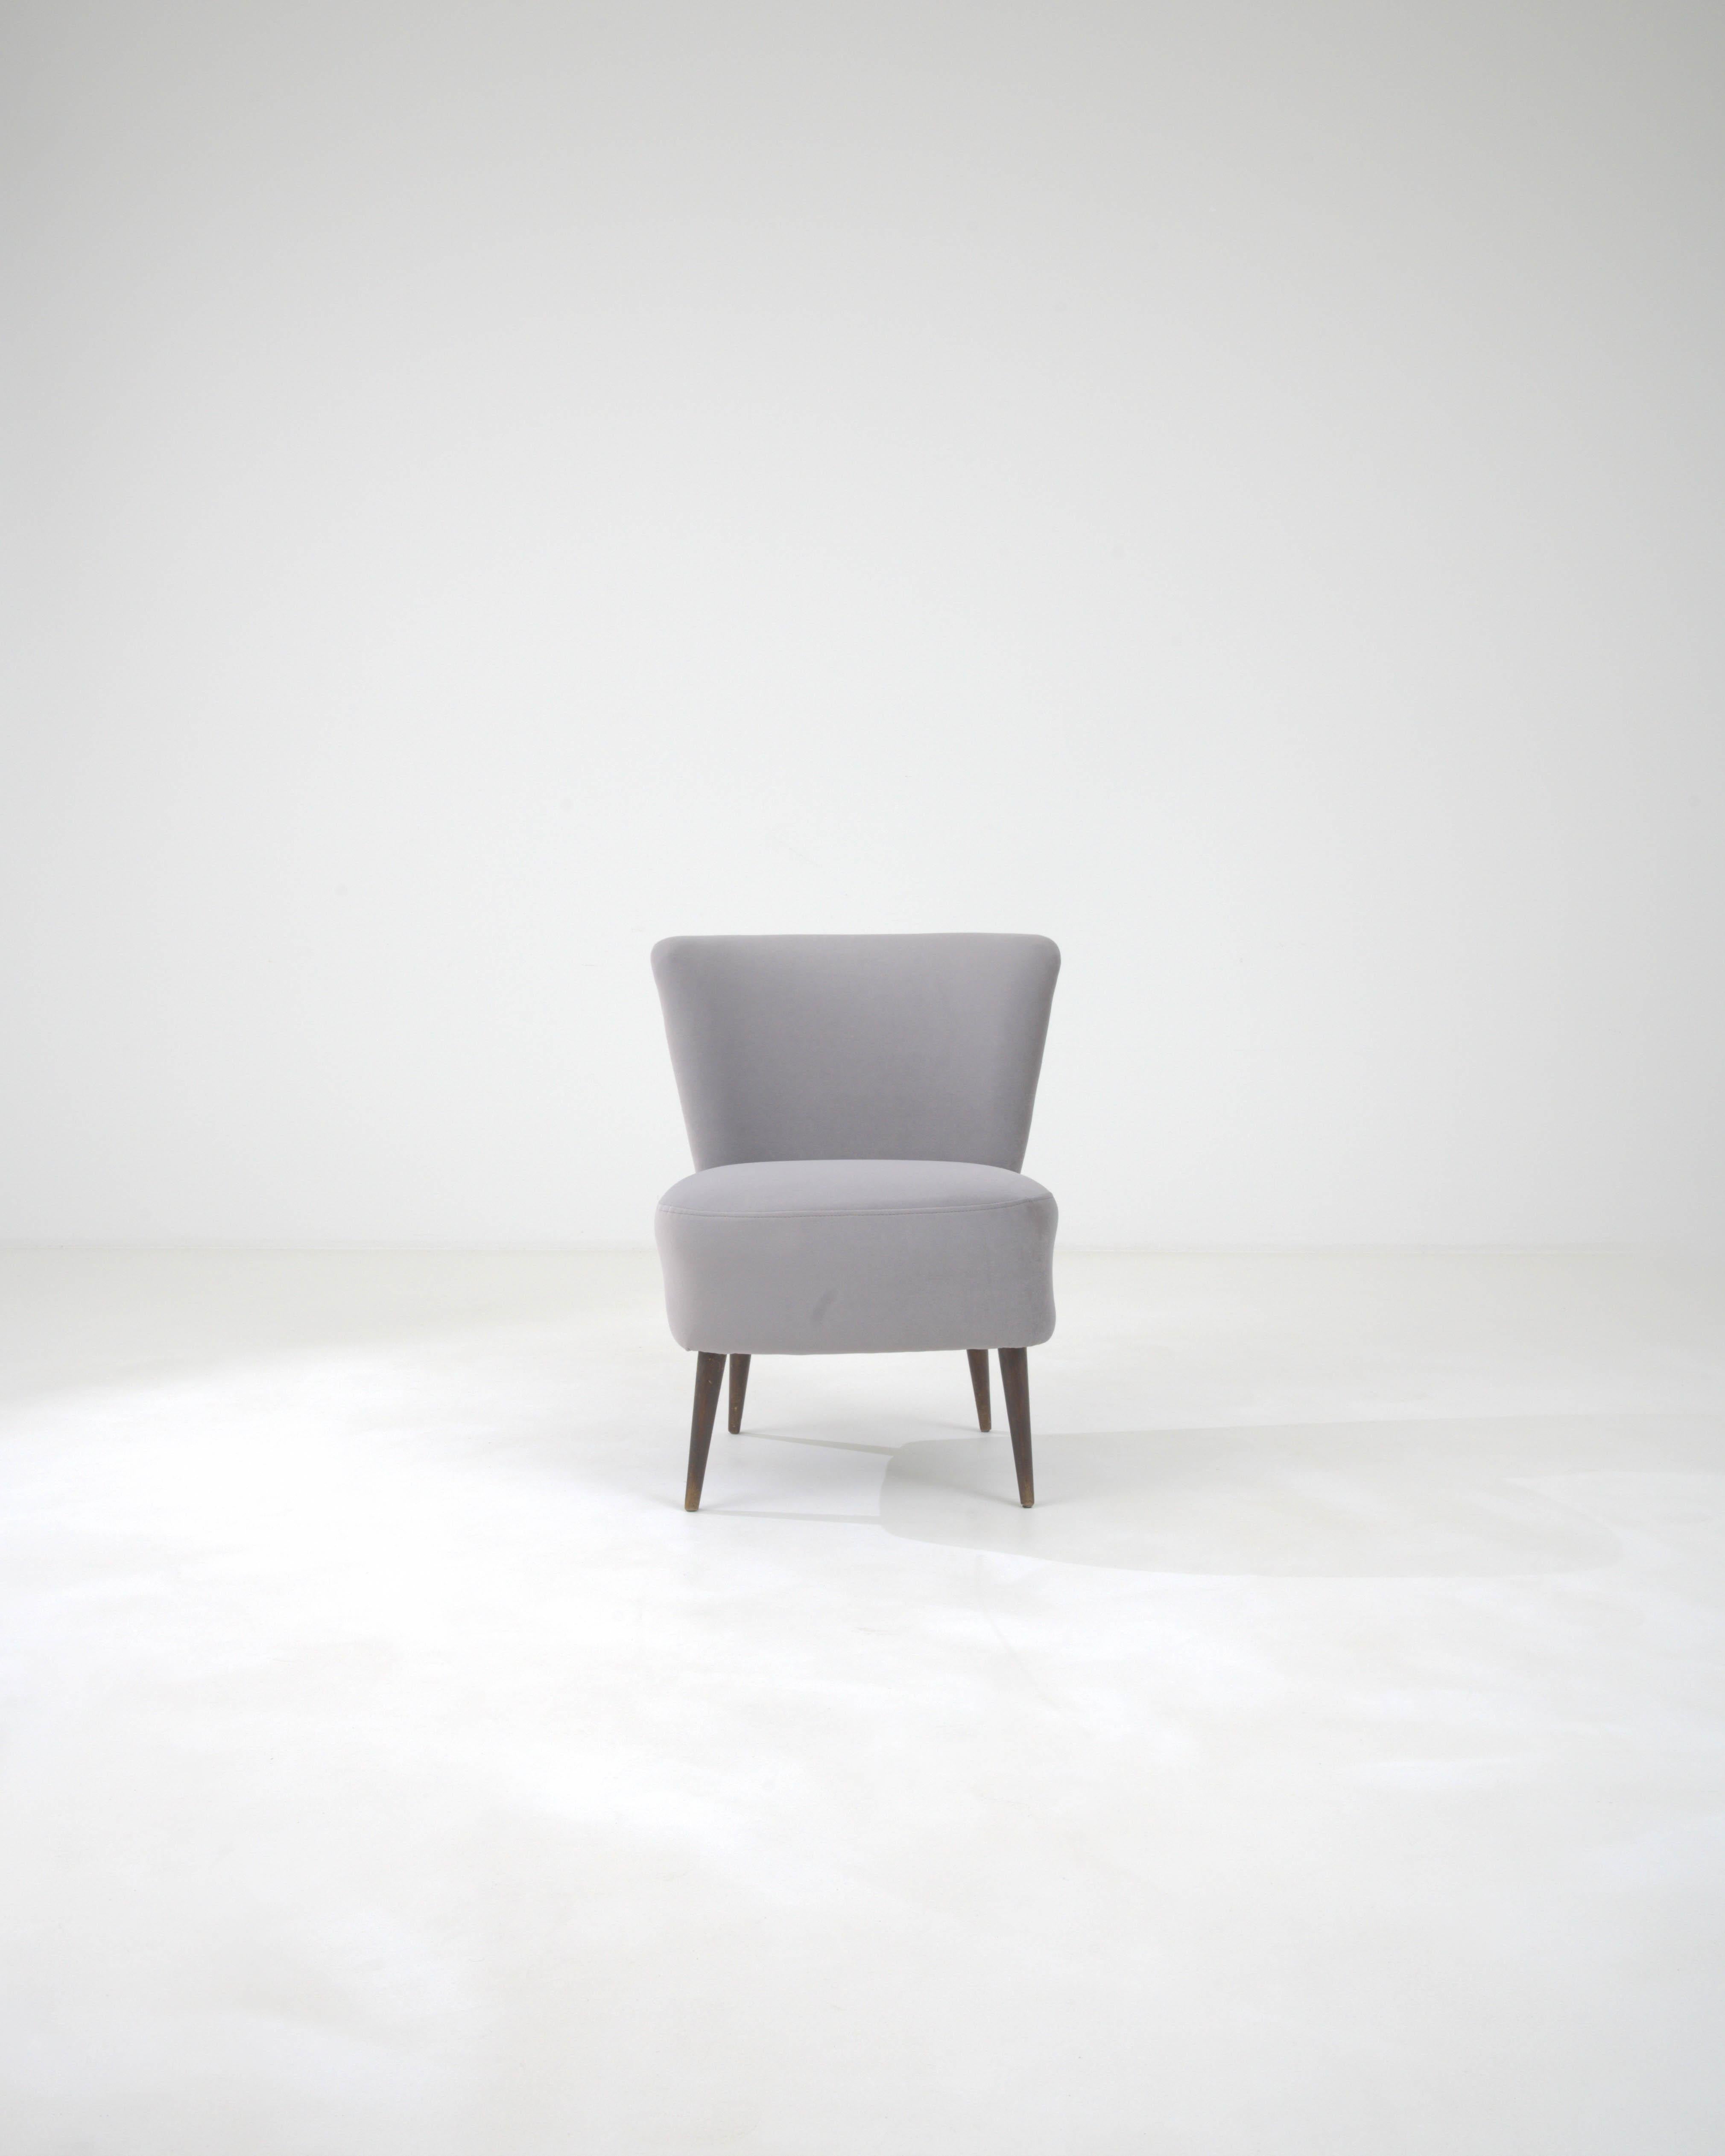 Voici la 20th Century Danish Upholstered Chair, une fusion de design minimaliste et de confort qui apporte une touche de sophistication scandinave à n'importe quelle pièce. Ce joyau de la modernité du milieu du siècle est doté d'un cadre en bois